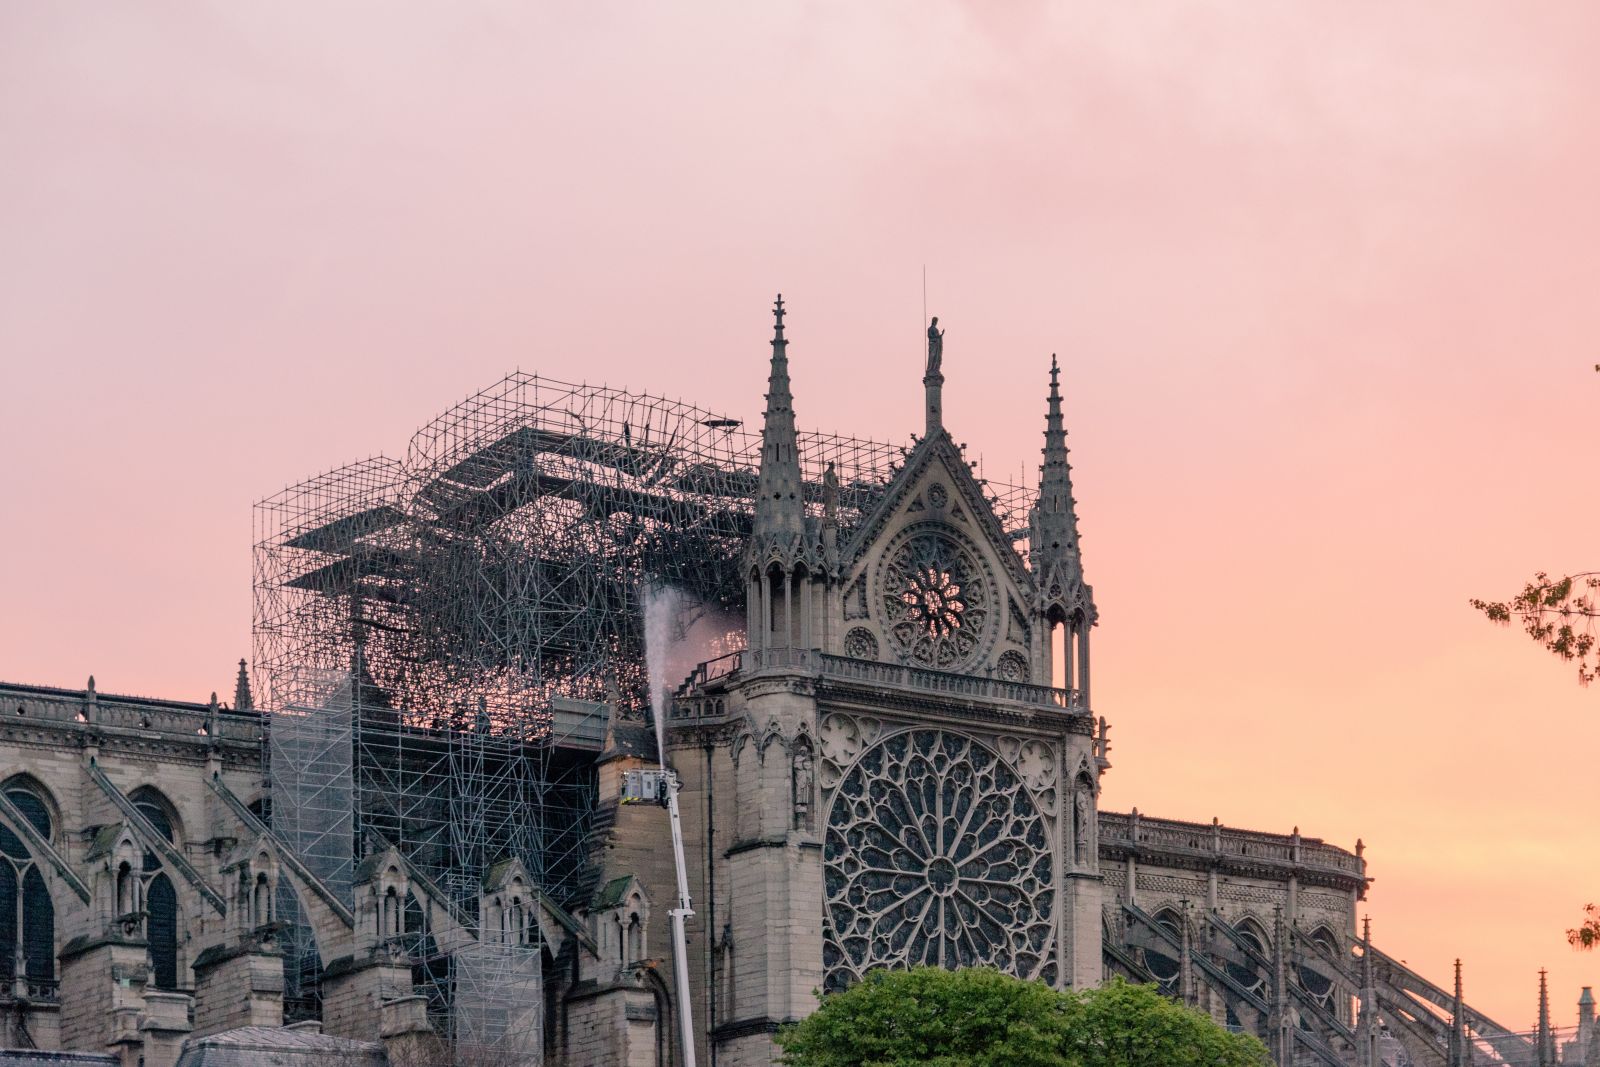 Incendie de Notre-Dame et pollution au plomb : des risques sanitaires sous-estimés